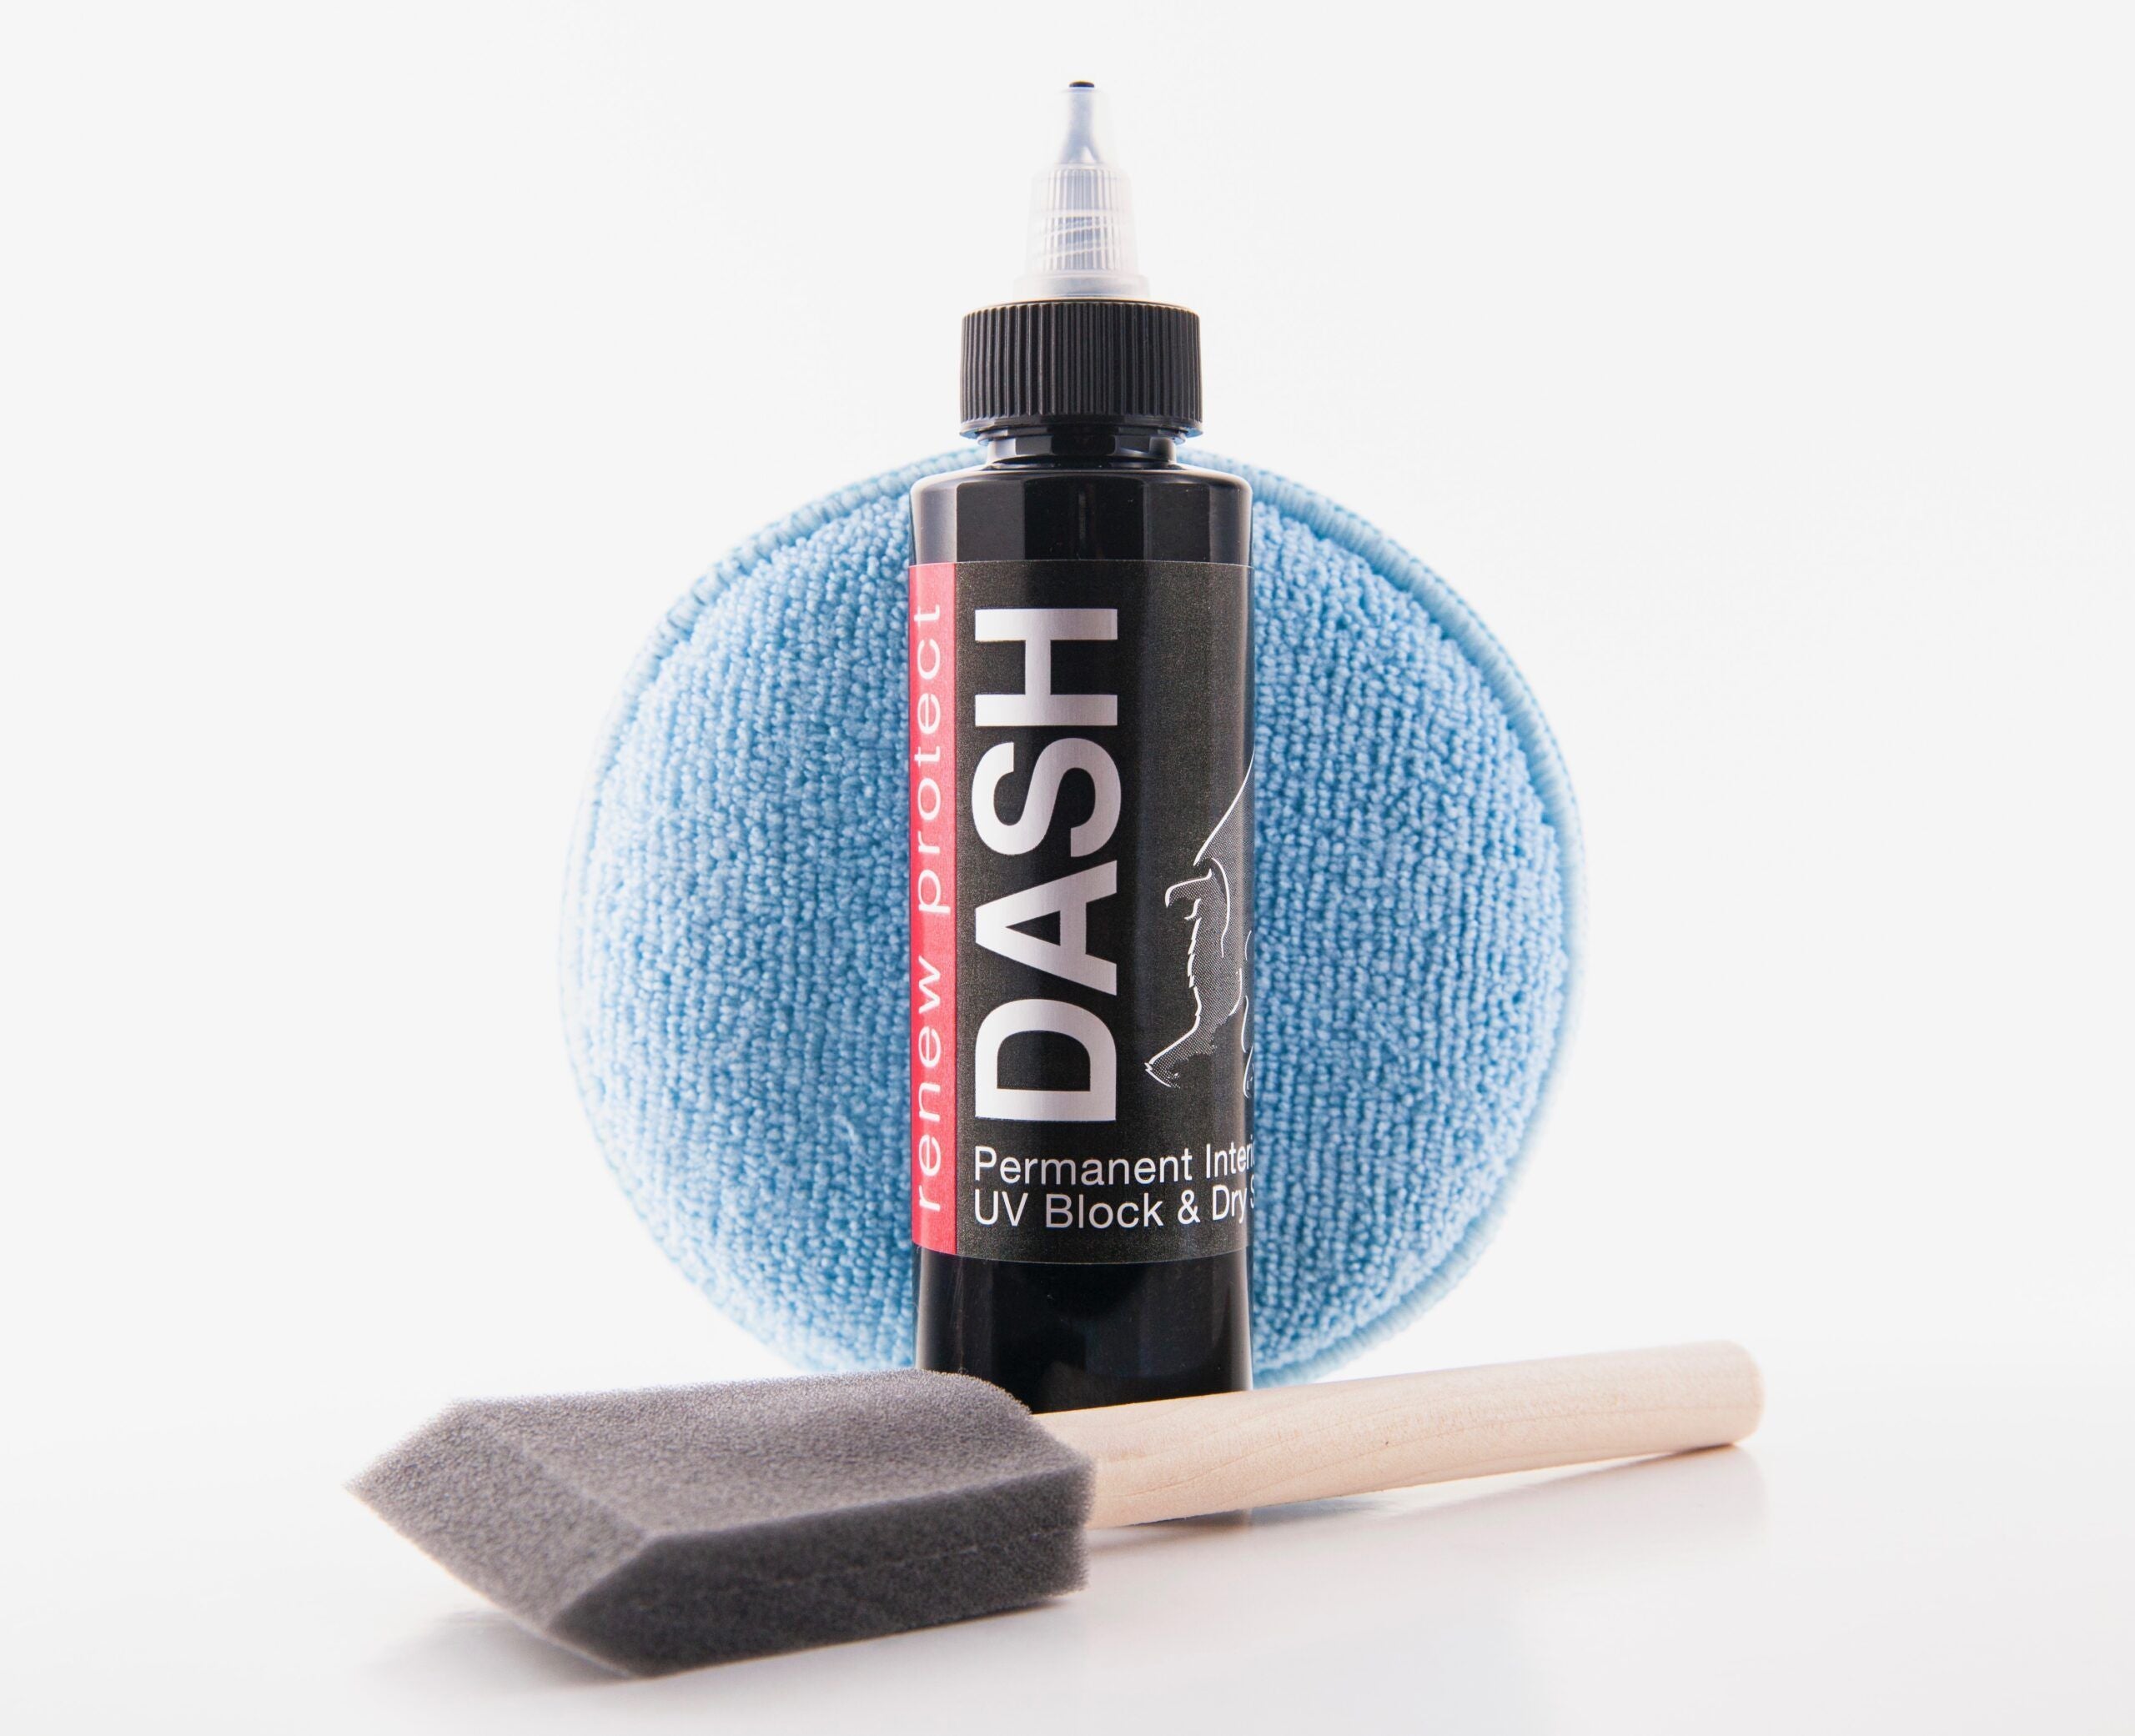 Permanent Interior Protectant  Dash Repair, Low-Glare Dry Seal  UV Block  for Car Dash, Plastics, Coated Leather, Vinyl (1.2 oz per auto)